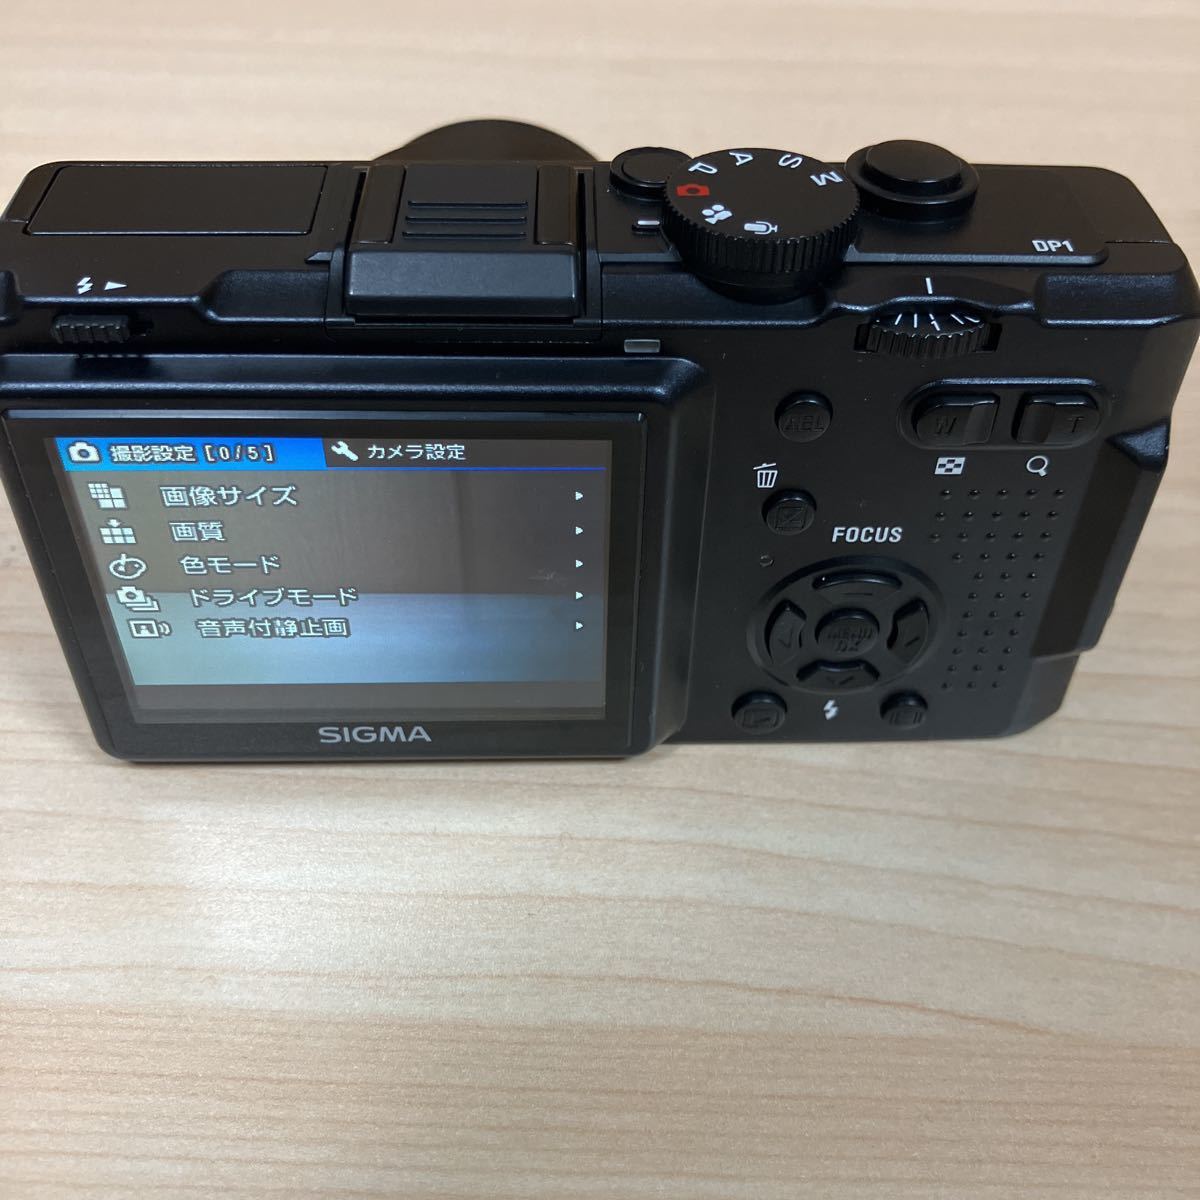 2022新春福袋】 Sigma DP-1 デジタルカメラ 740 シグマ - www